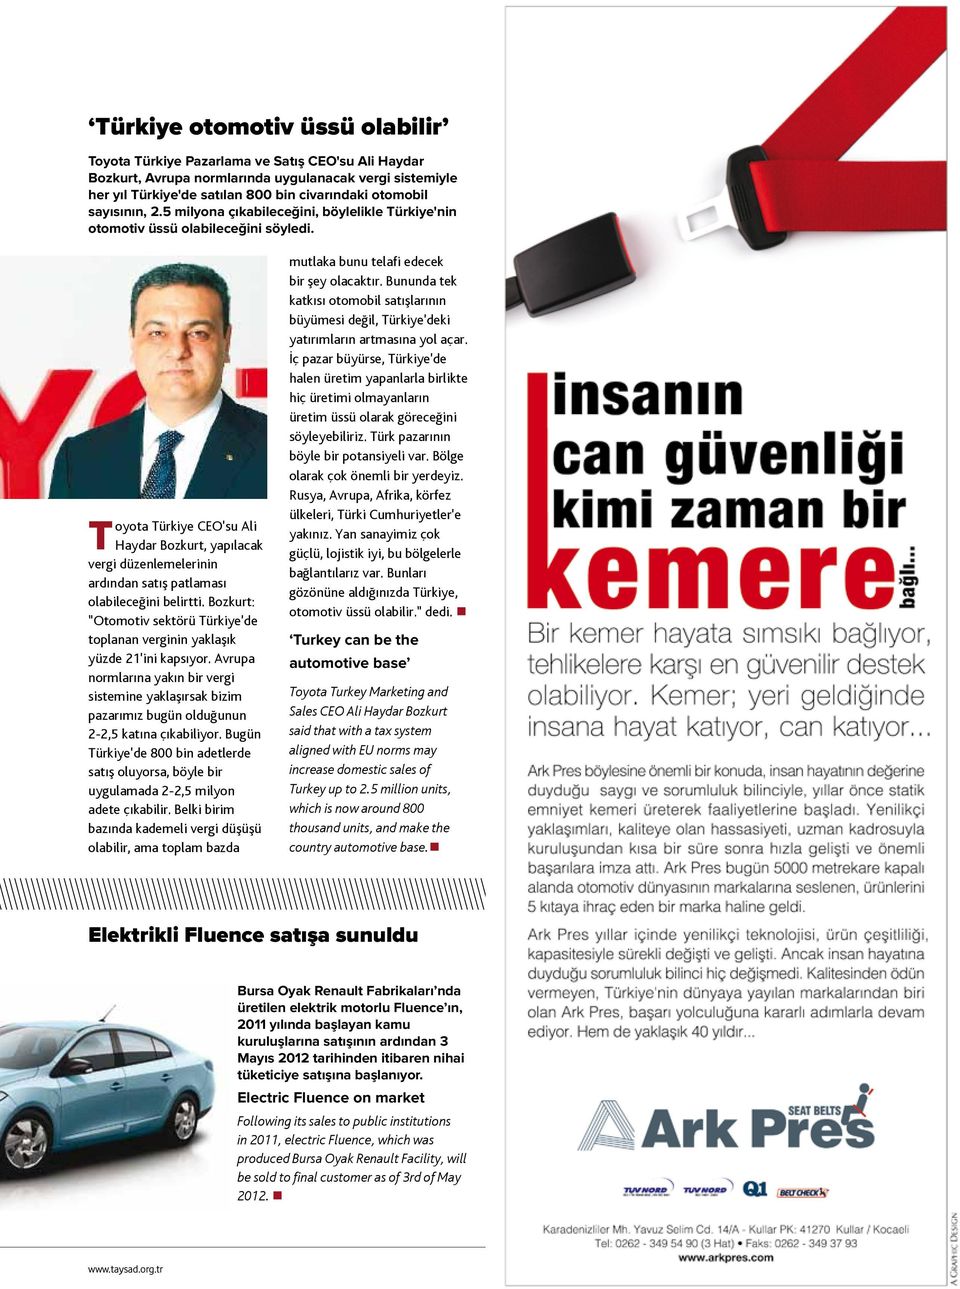 Toyota Türkiye CEO'su Ali Haydar Bozkurt, yapılacak vergi düzenlemelerinin ardından satış patlaması olabileceğini belirtti.